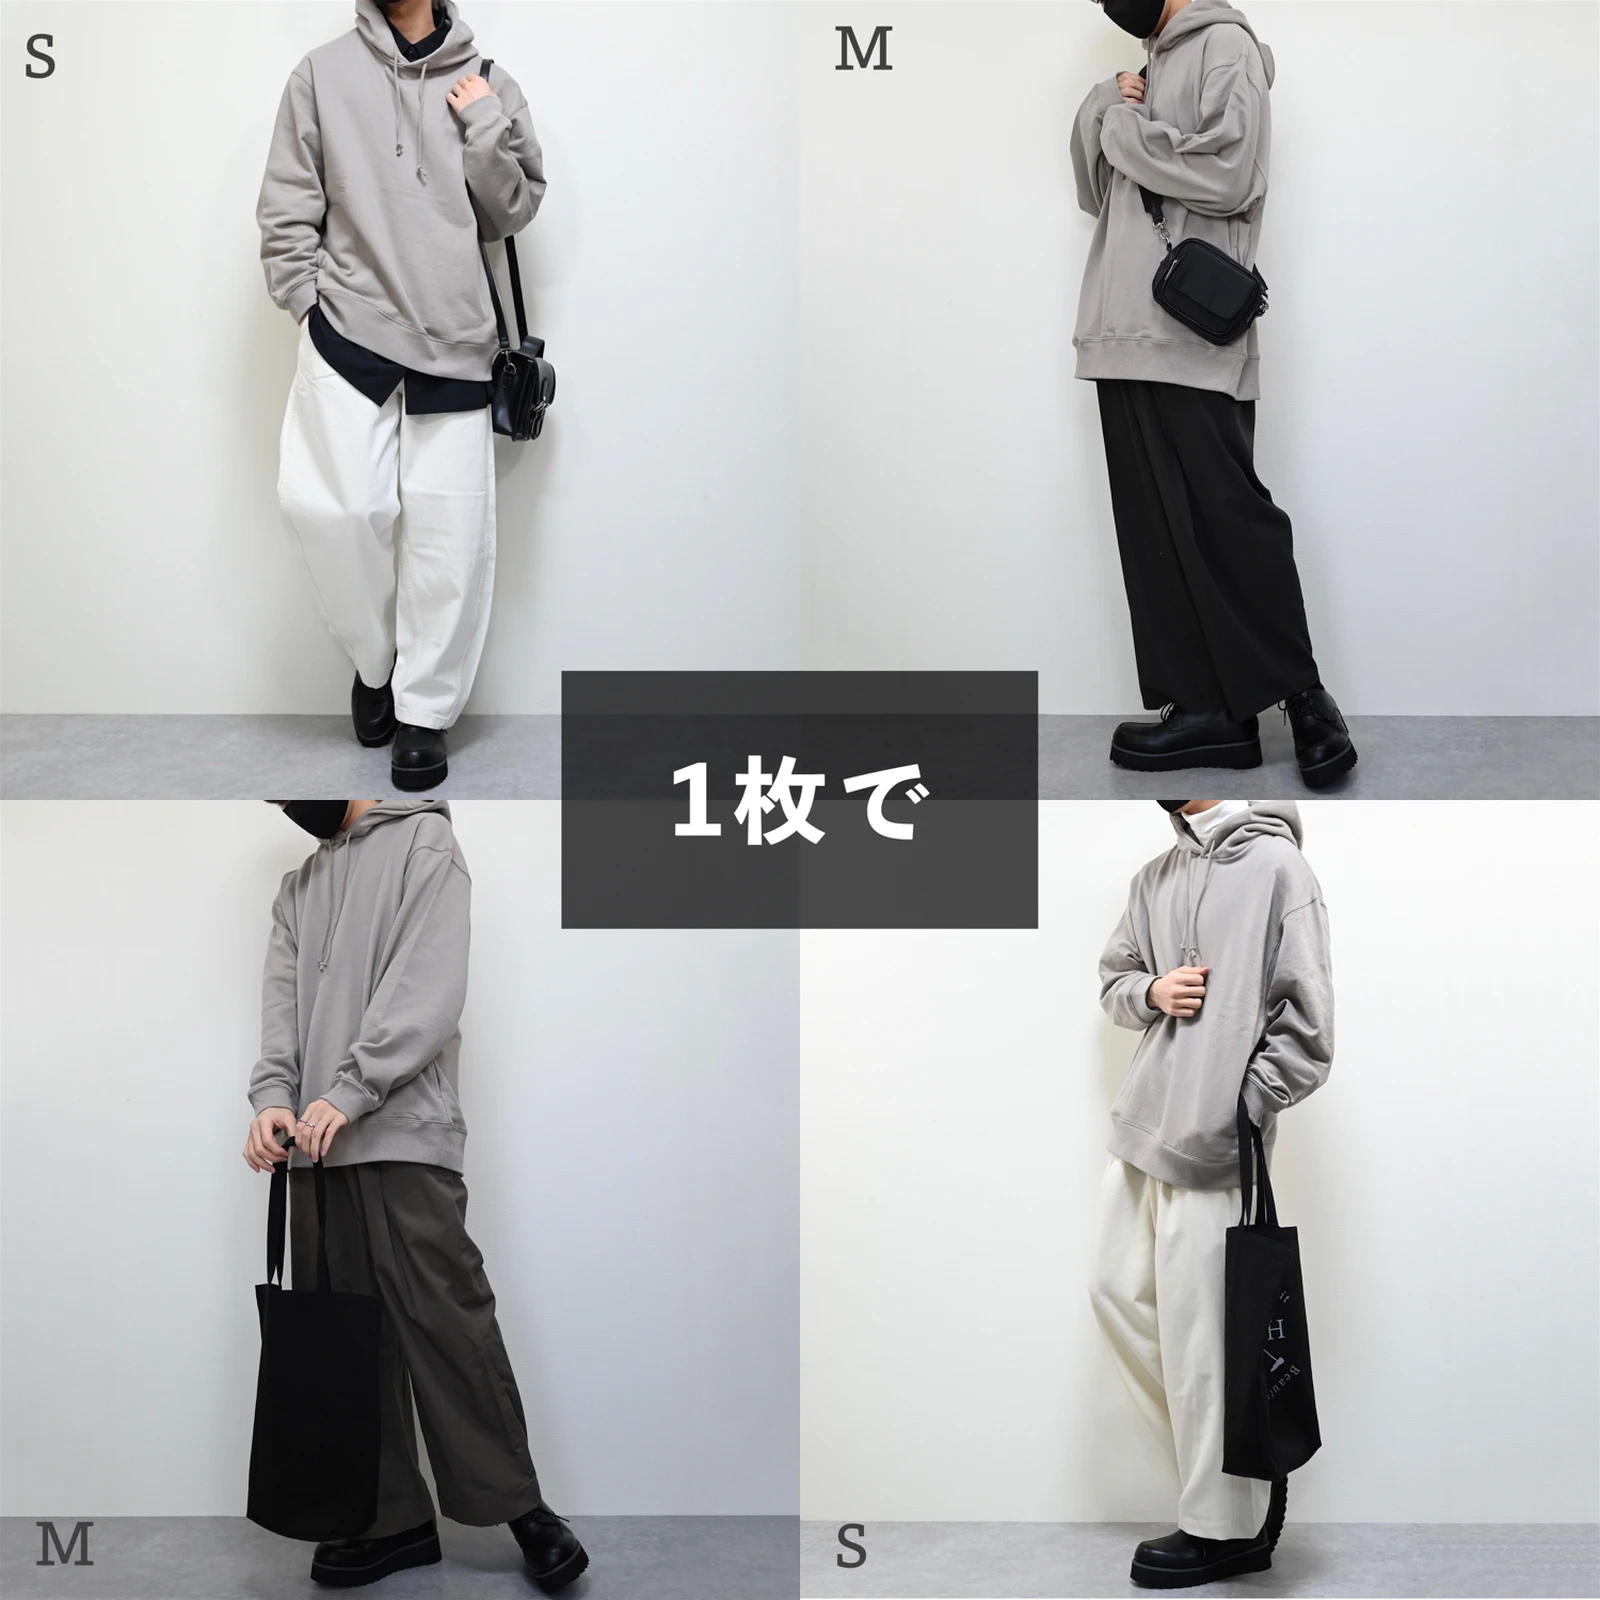 かっこかわいい 彼氏の服装 Masakiが投稿したフォトブック Lemon8